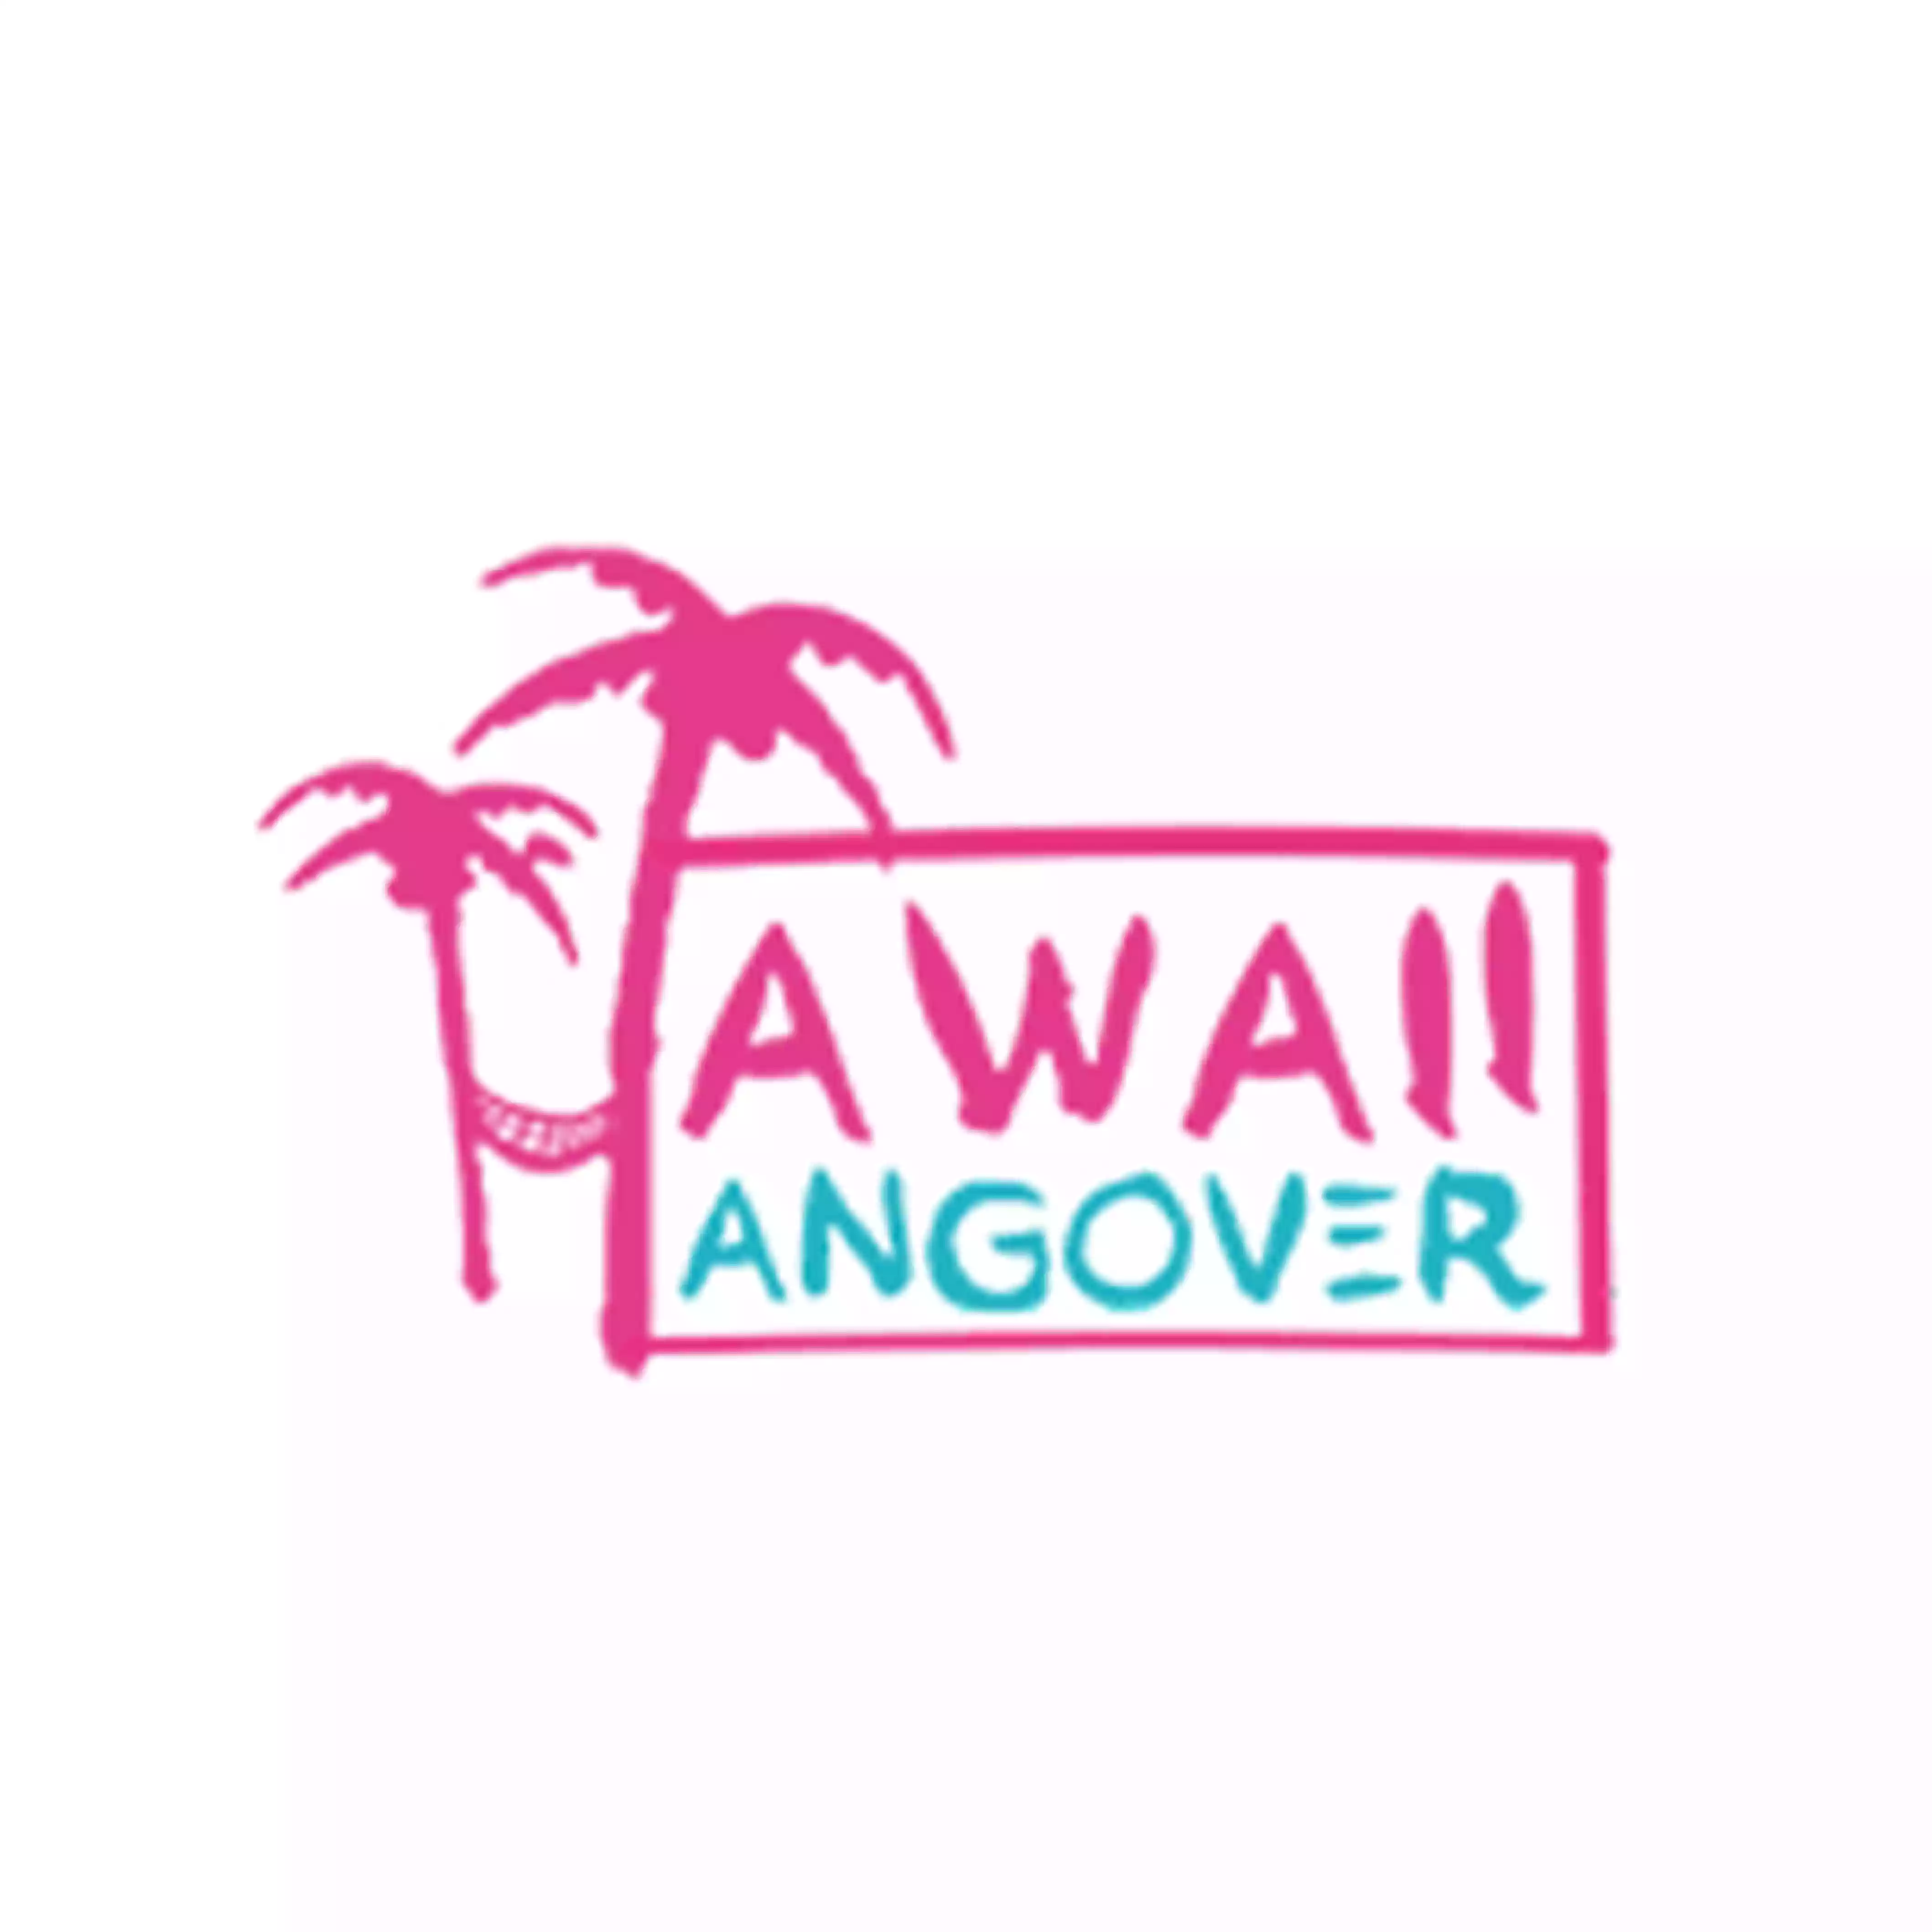 Hawaii Hangover logo